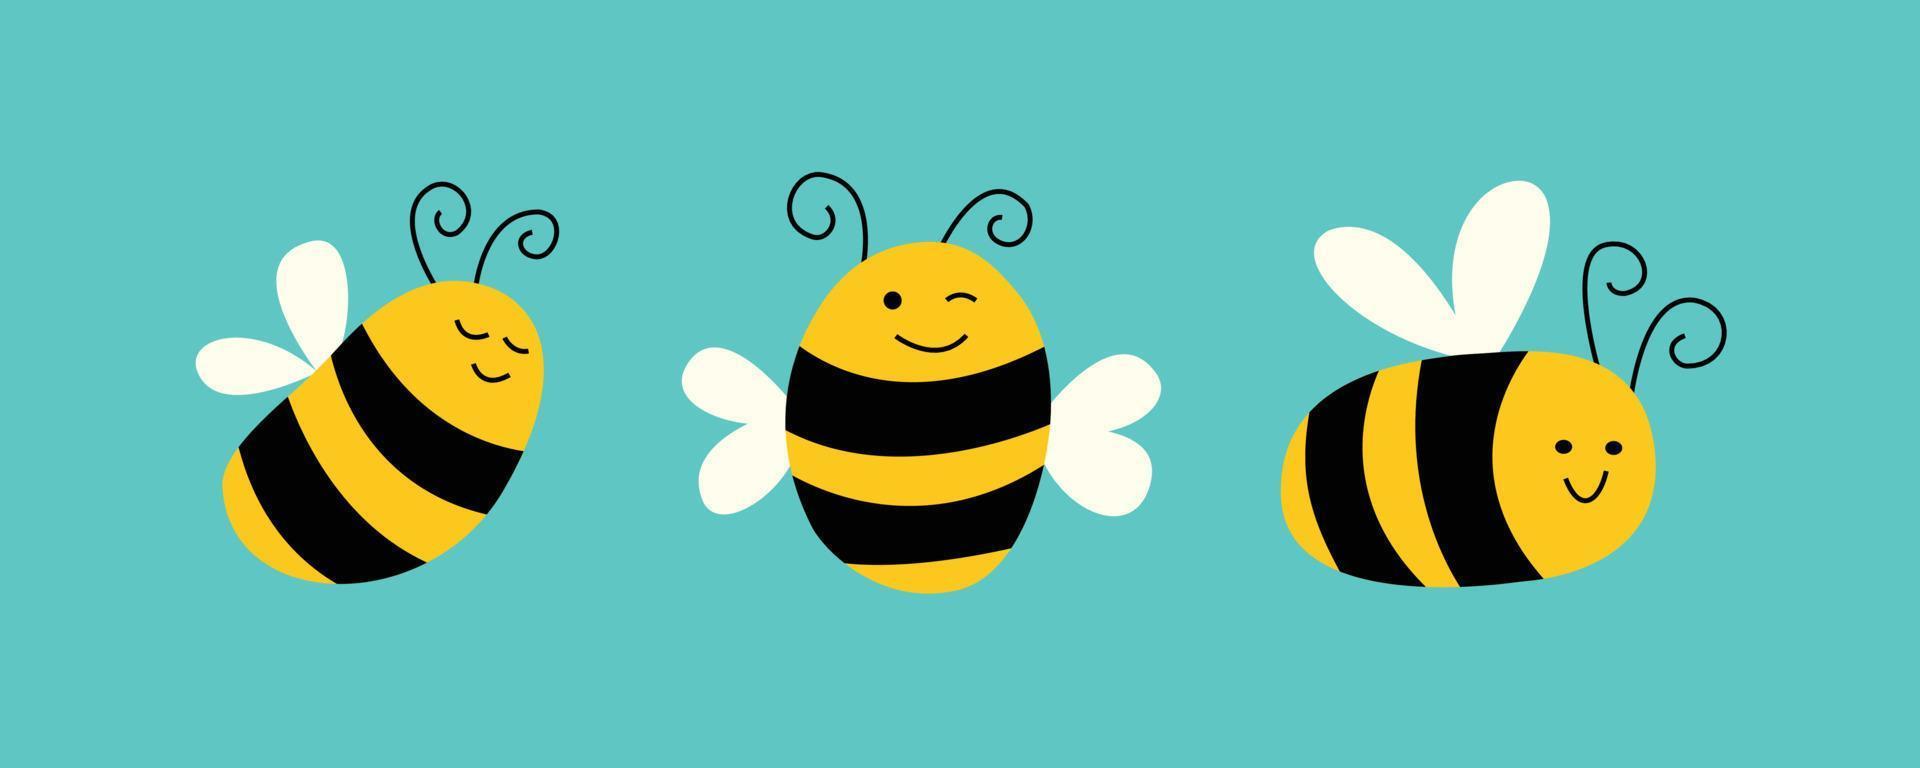 abelhas em personagens fofinhos. desenho de desenhos animados de ilustrações de animais. vetor